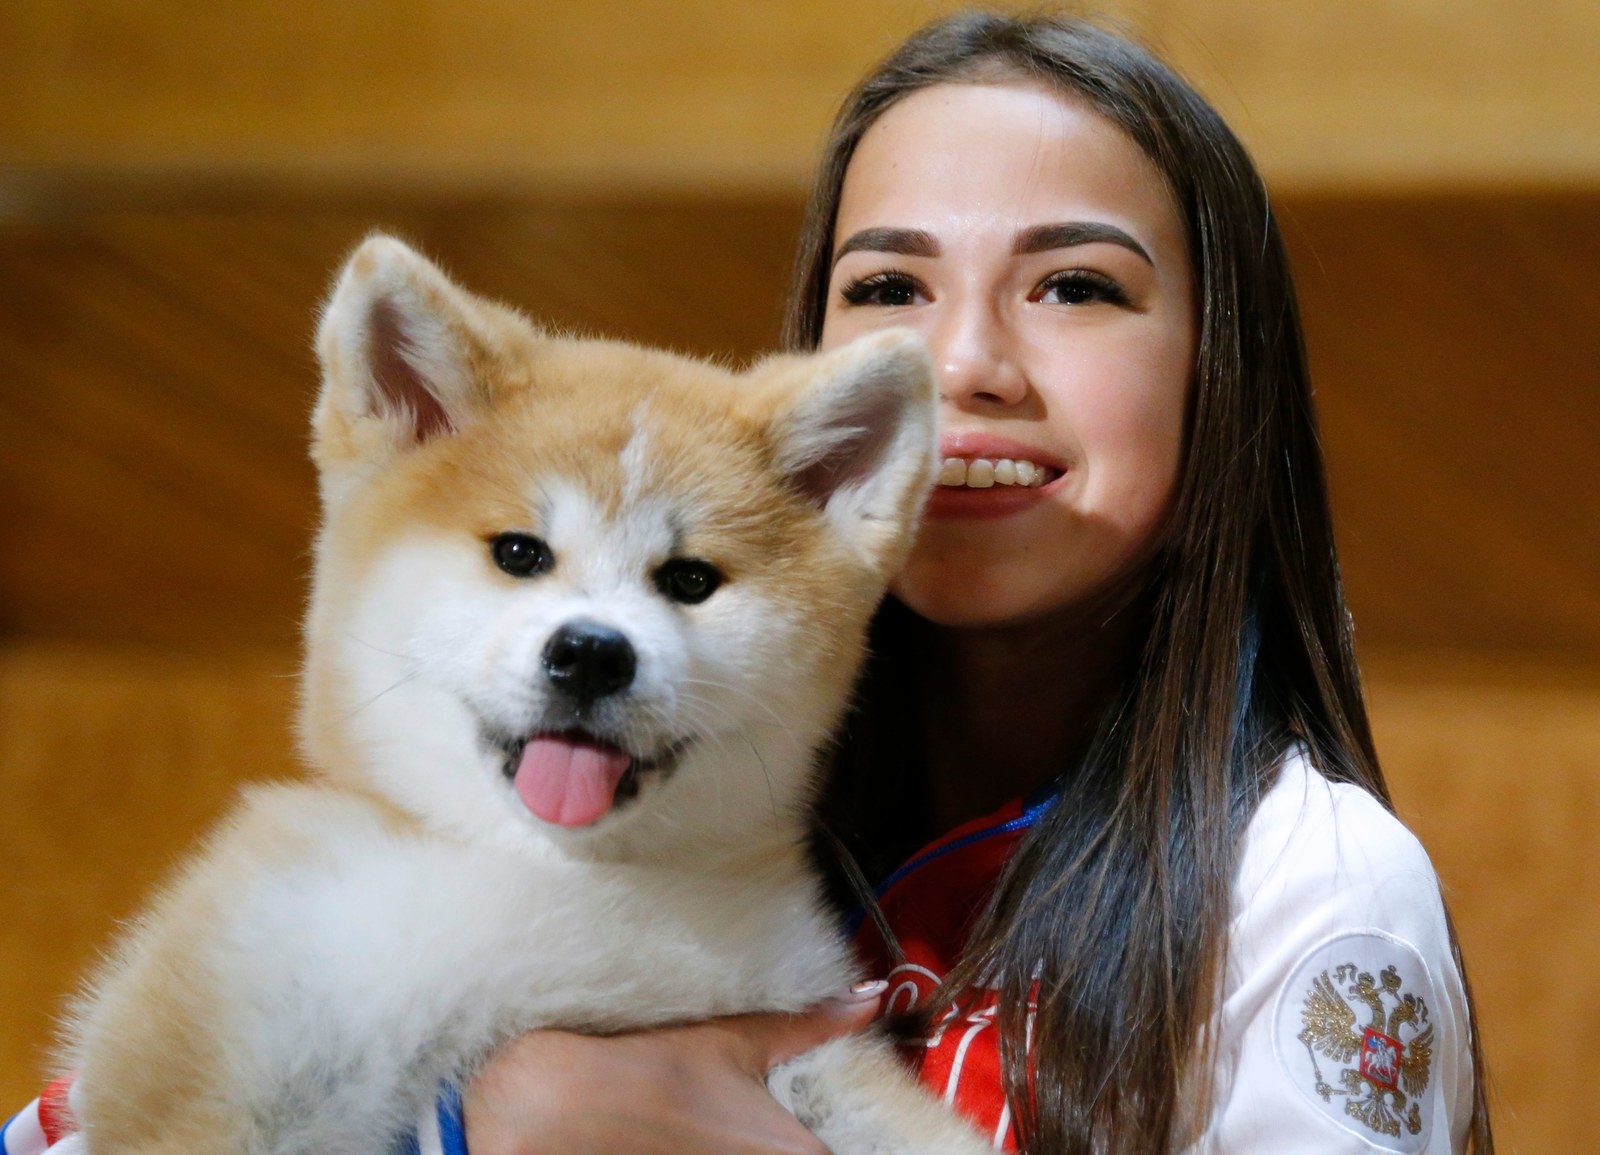 ザキトワ選手に贈呈された秋田犬 マサル がかわいすぎるとわかる15の証拠写真